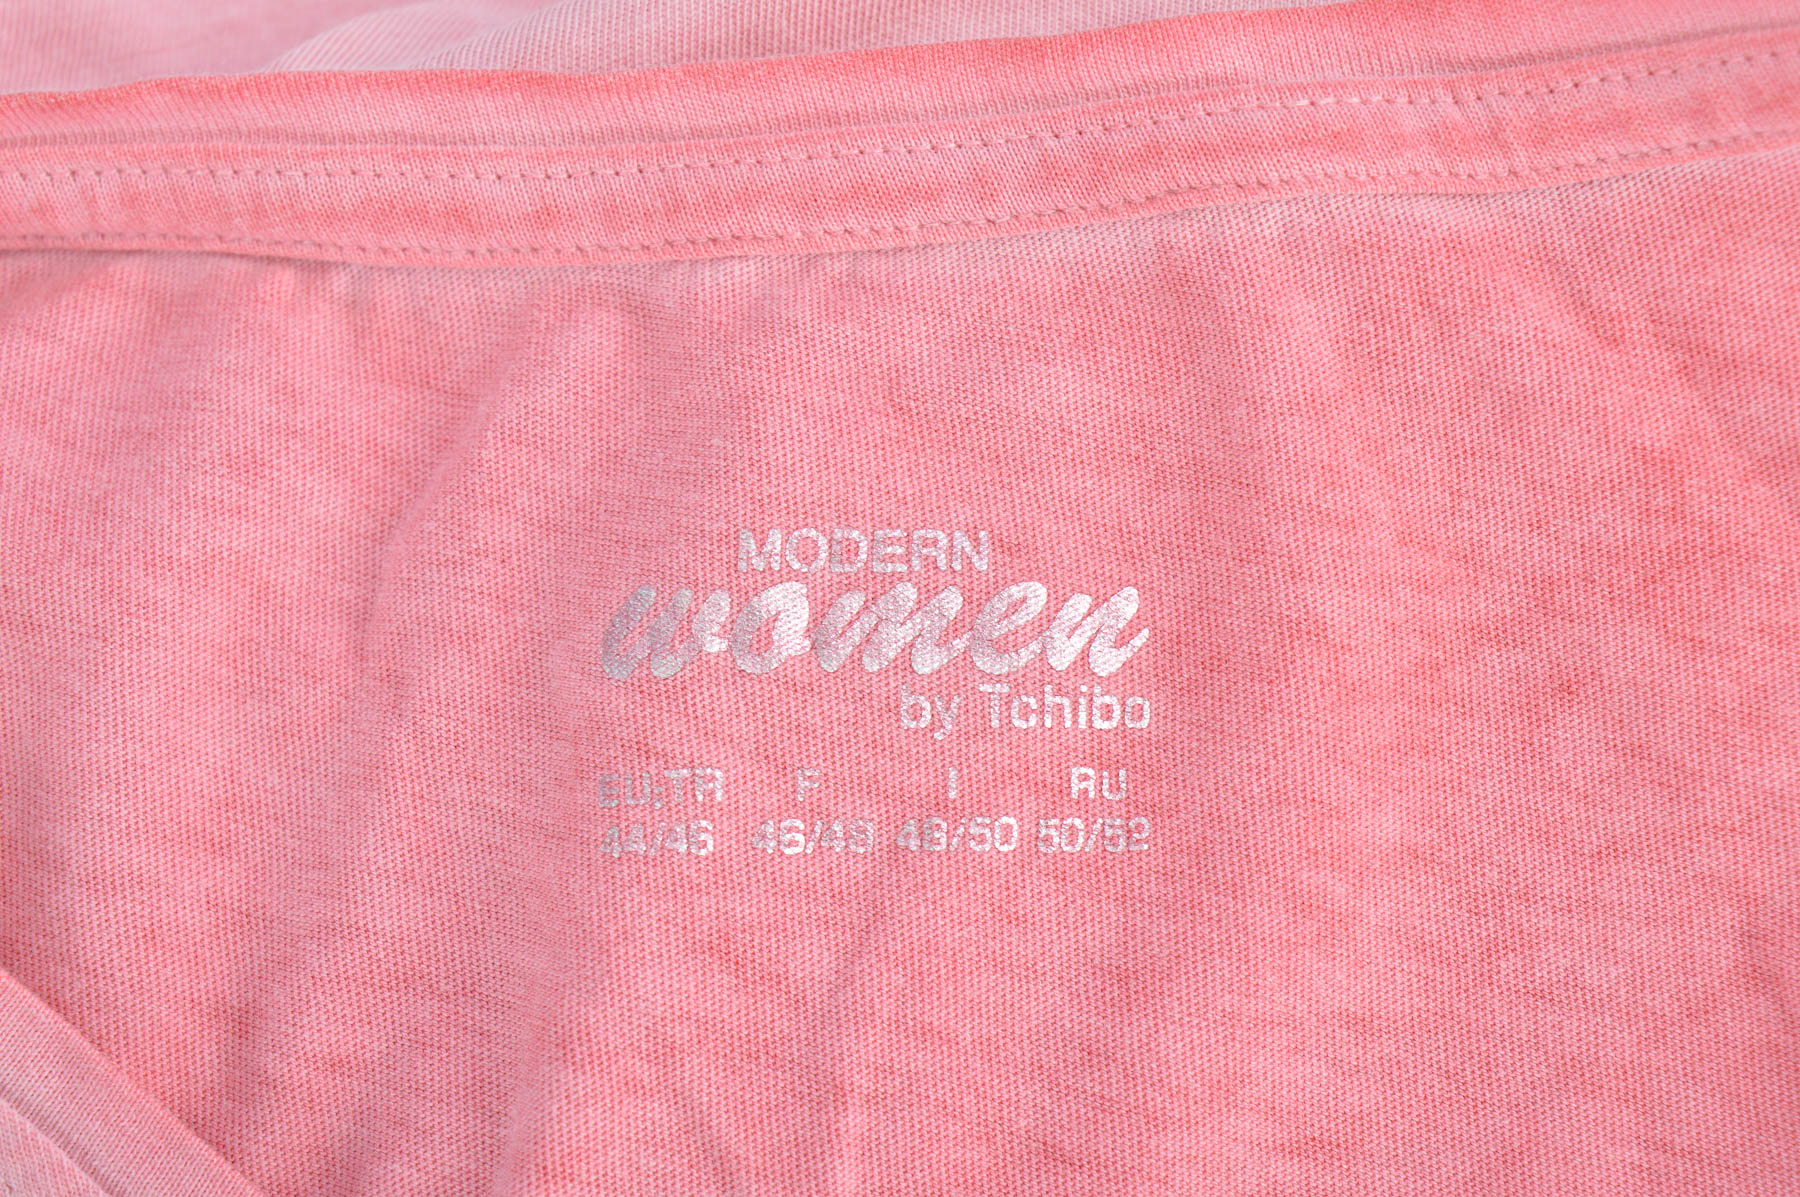 Women's t-shirt - MODERN  women by Tchibo - 2